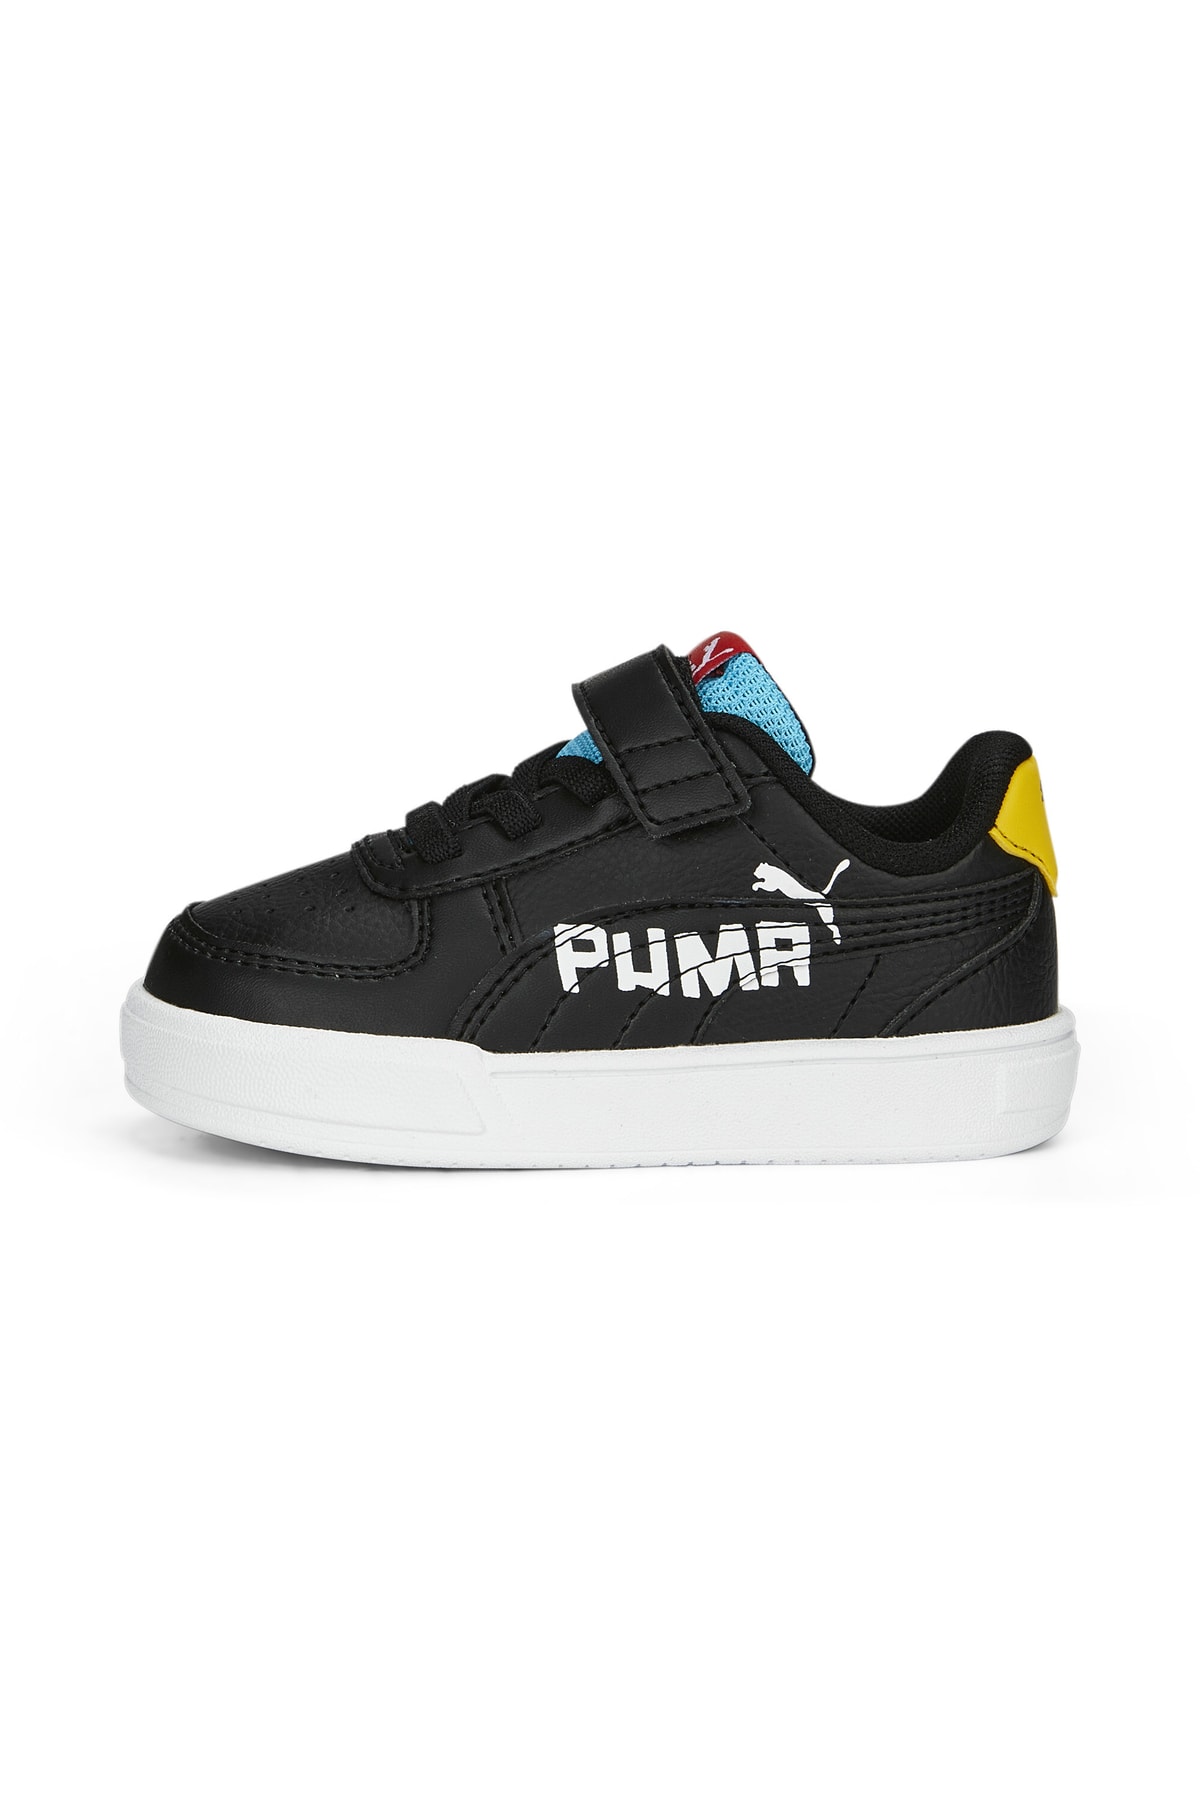 Puma Caven Brand Love AC+ Inf PUMA Black